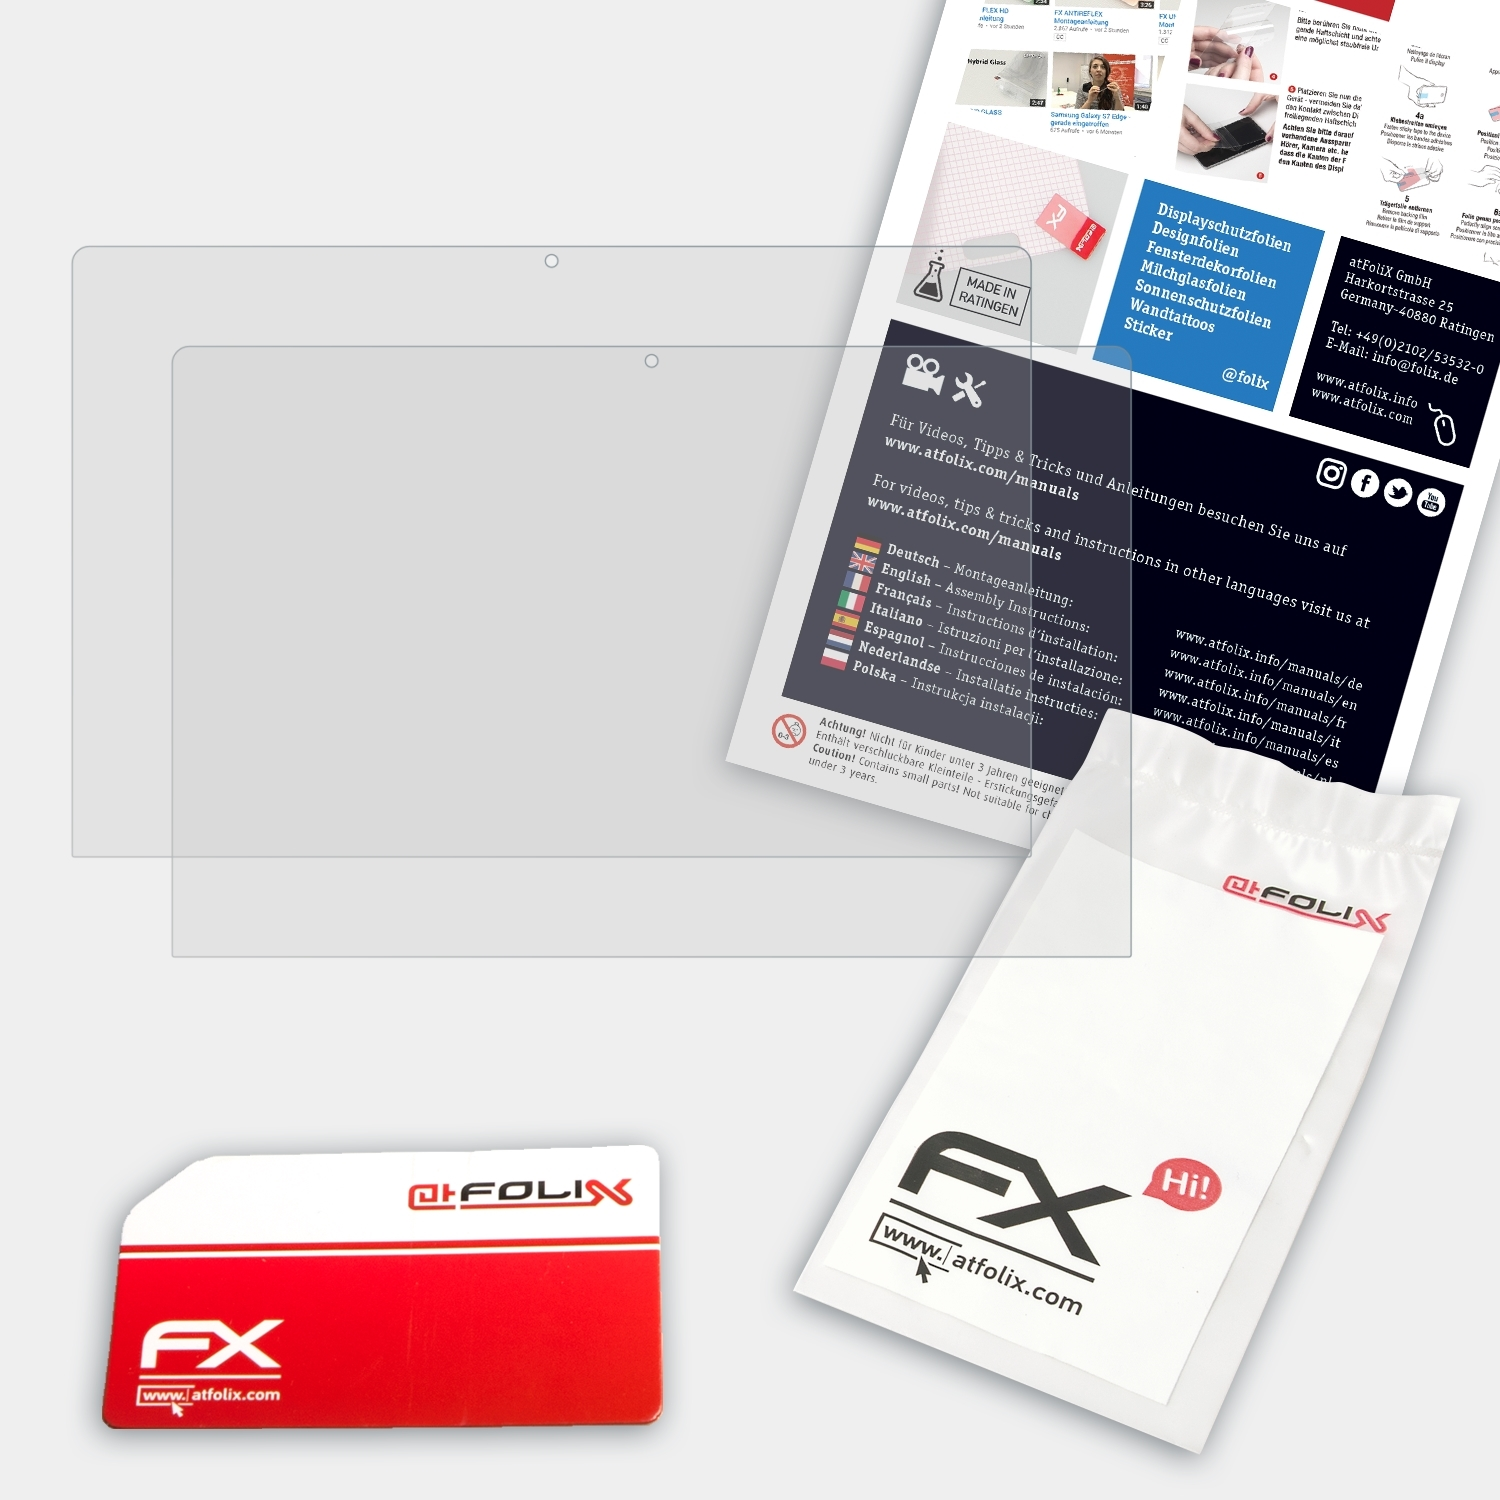 ATFOLIX 2x C11) Primebook FX-Antireflex Displayschutz(für Trekstor